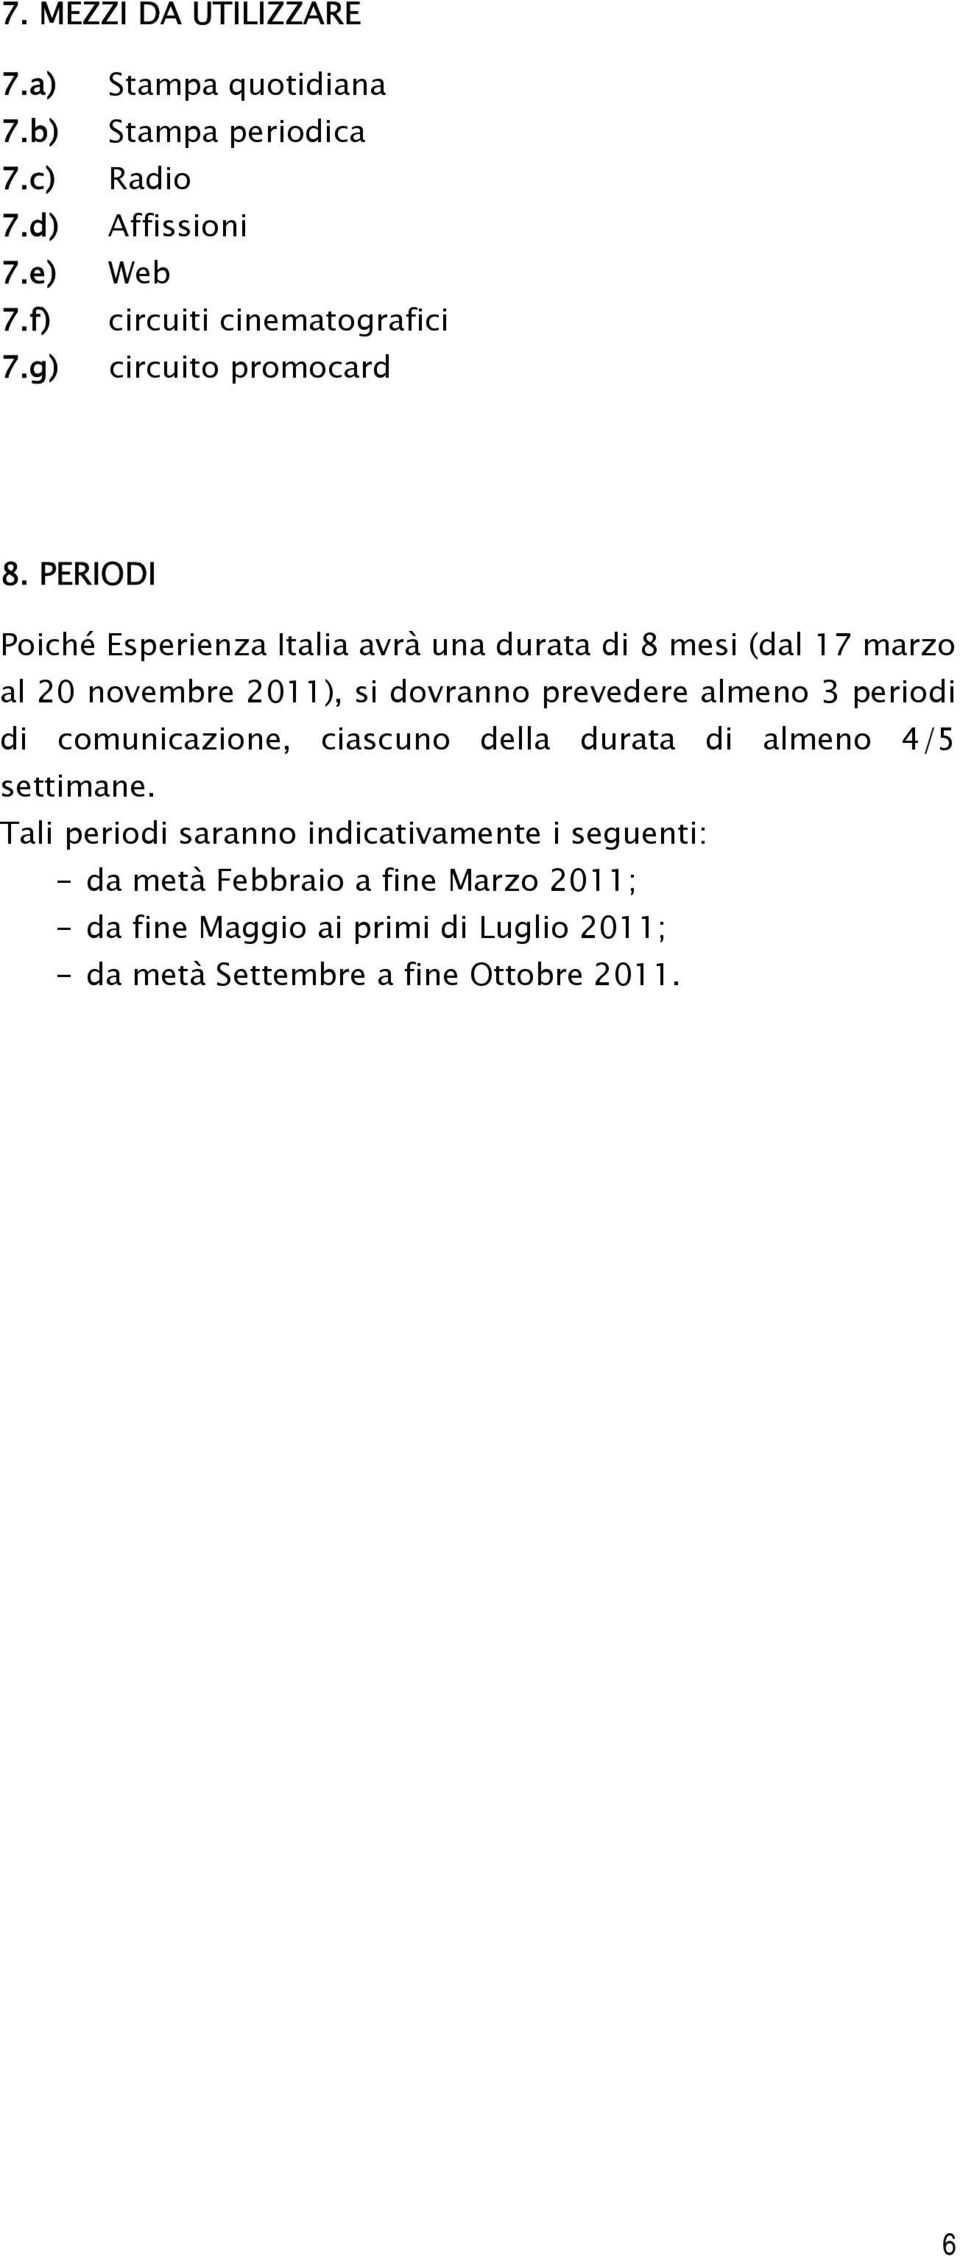 PERIODI Poiché Esperienza Italia avrà una durata di 8 mesi (dal 17 marzo al 20 novembre 2011), si dovranno prevedere almeno 3